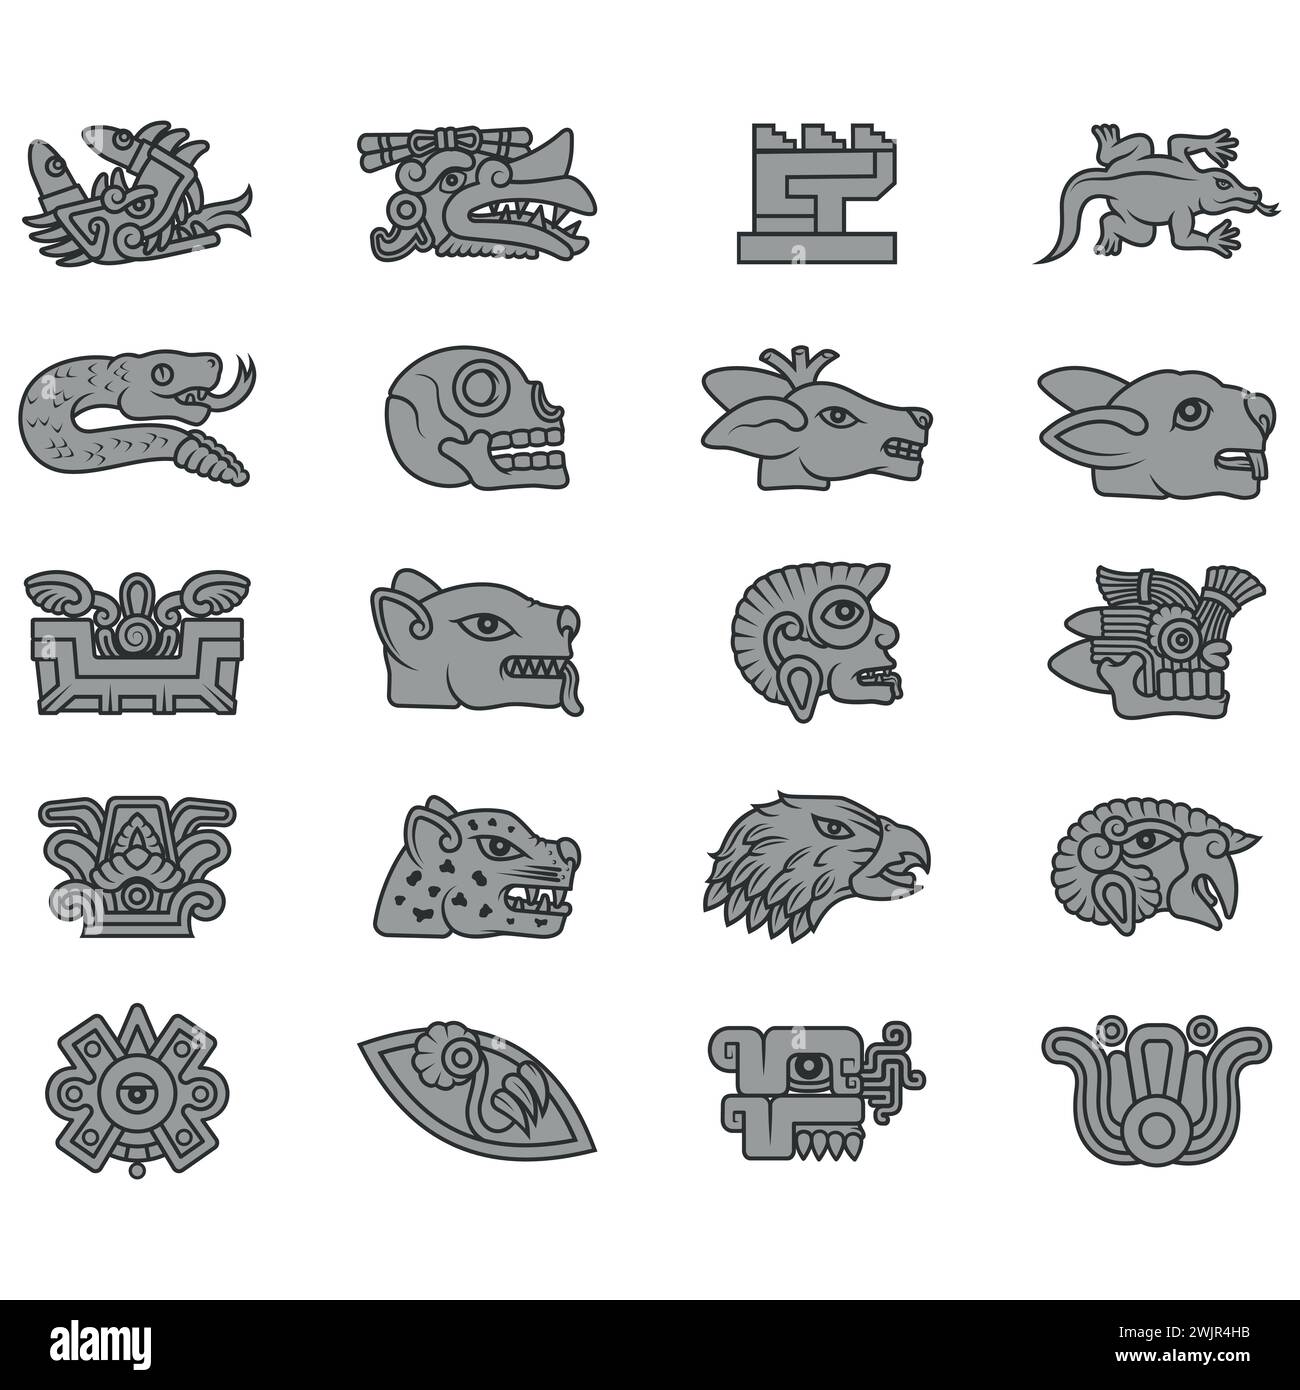 Disegno vettoriale dei simboli dell'antica civiltà azteca, geroglifici del calendario azteco Illustrazione Vettoriale